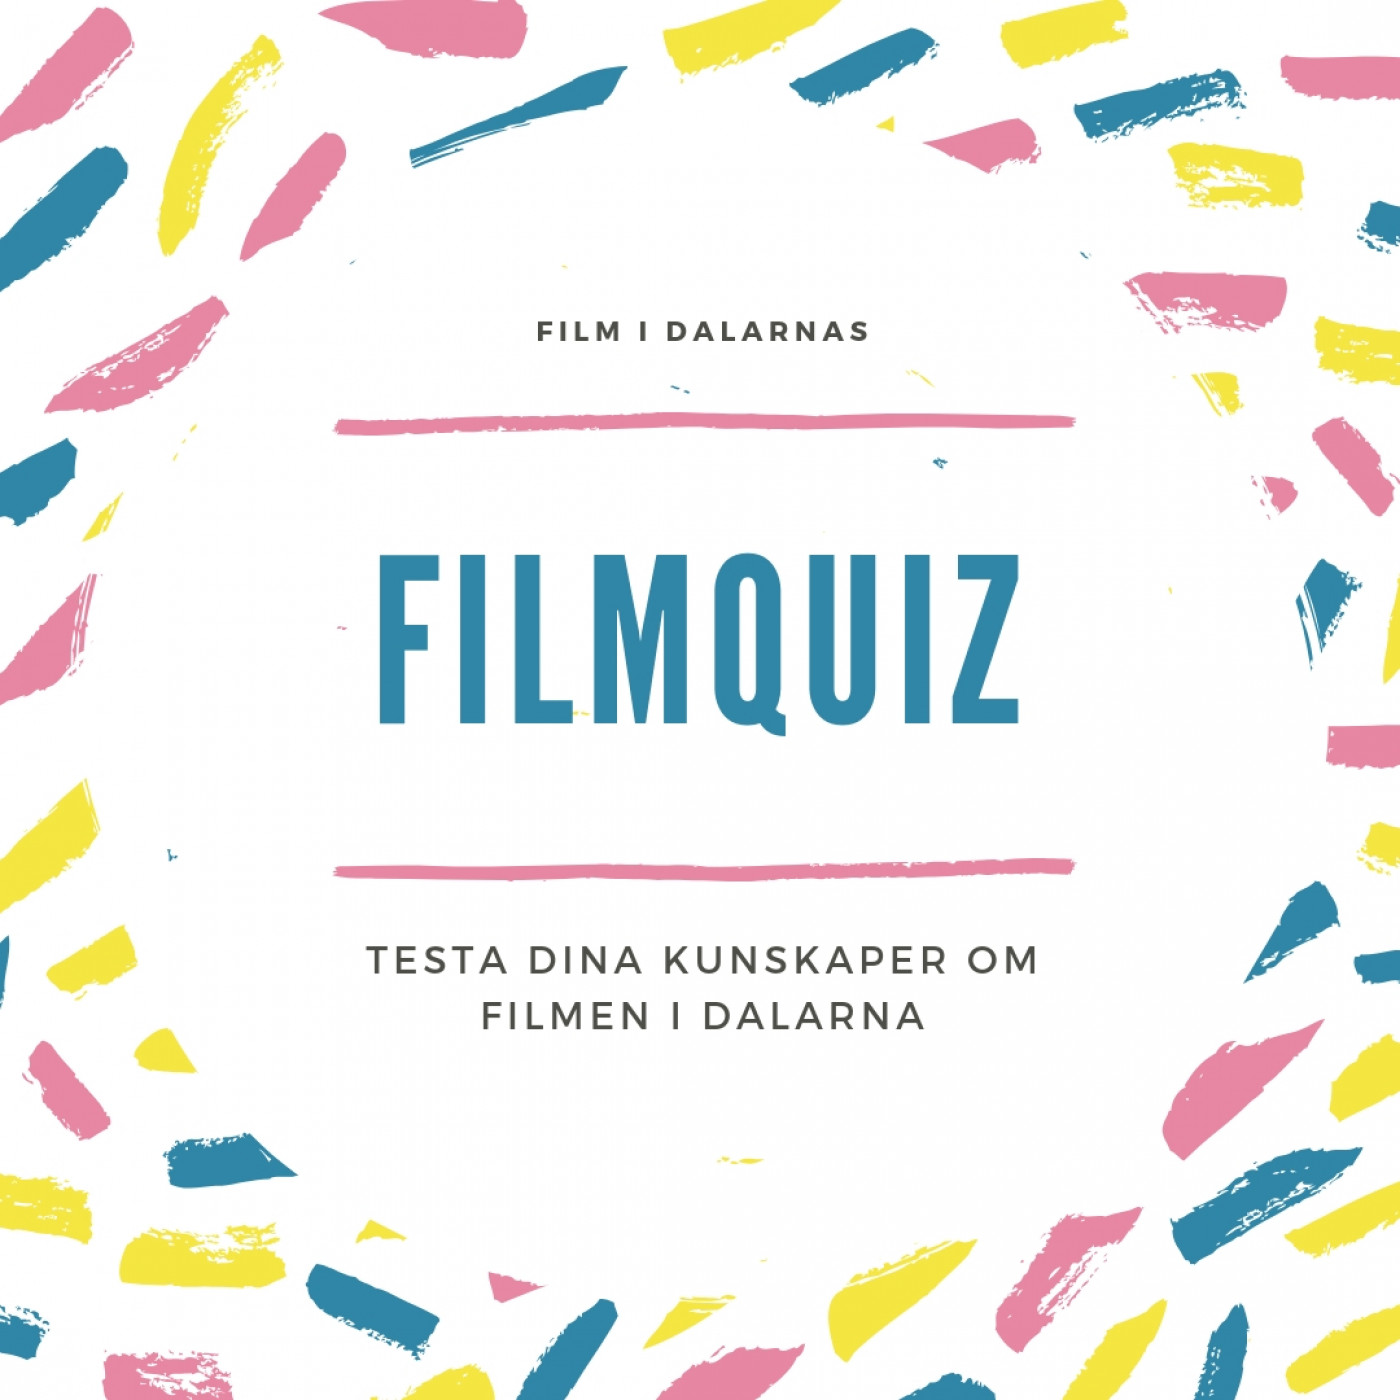 Testa dina kunskaper i Film i Dalarnas quiz